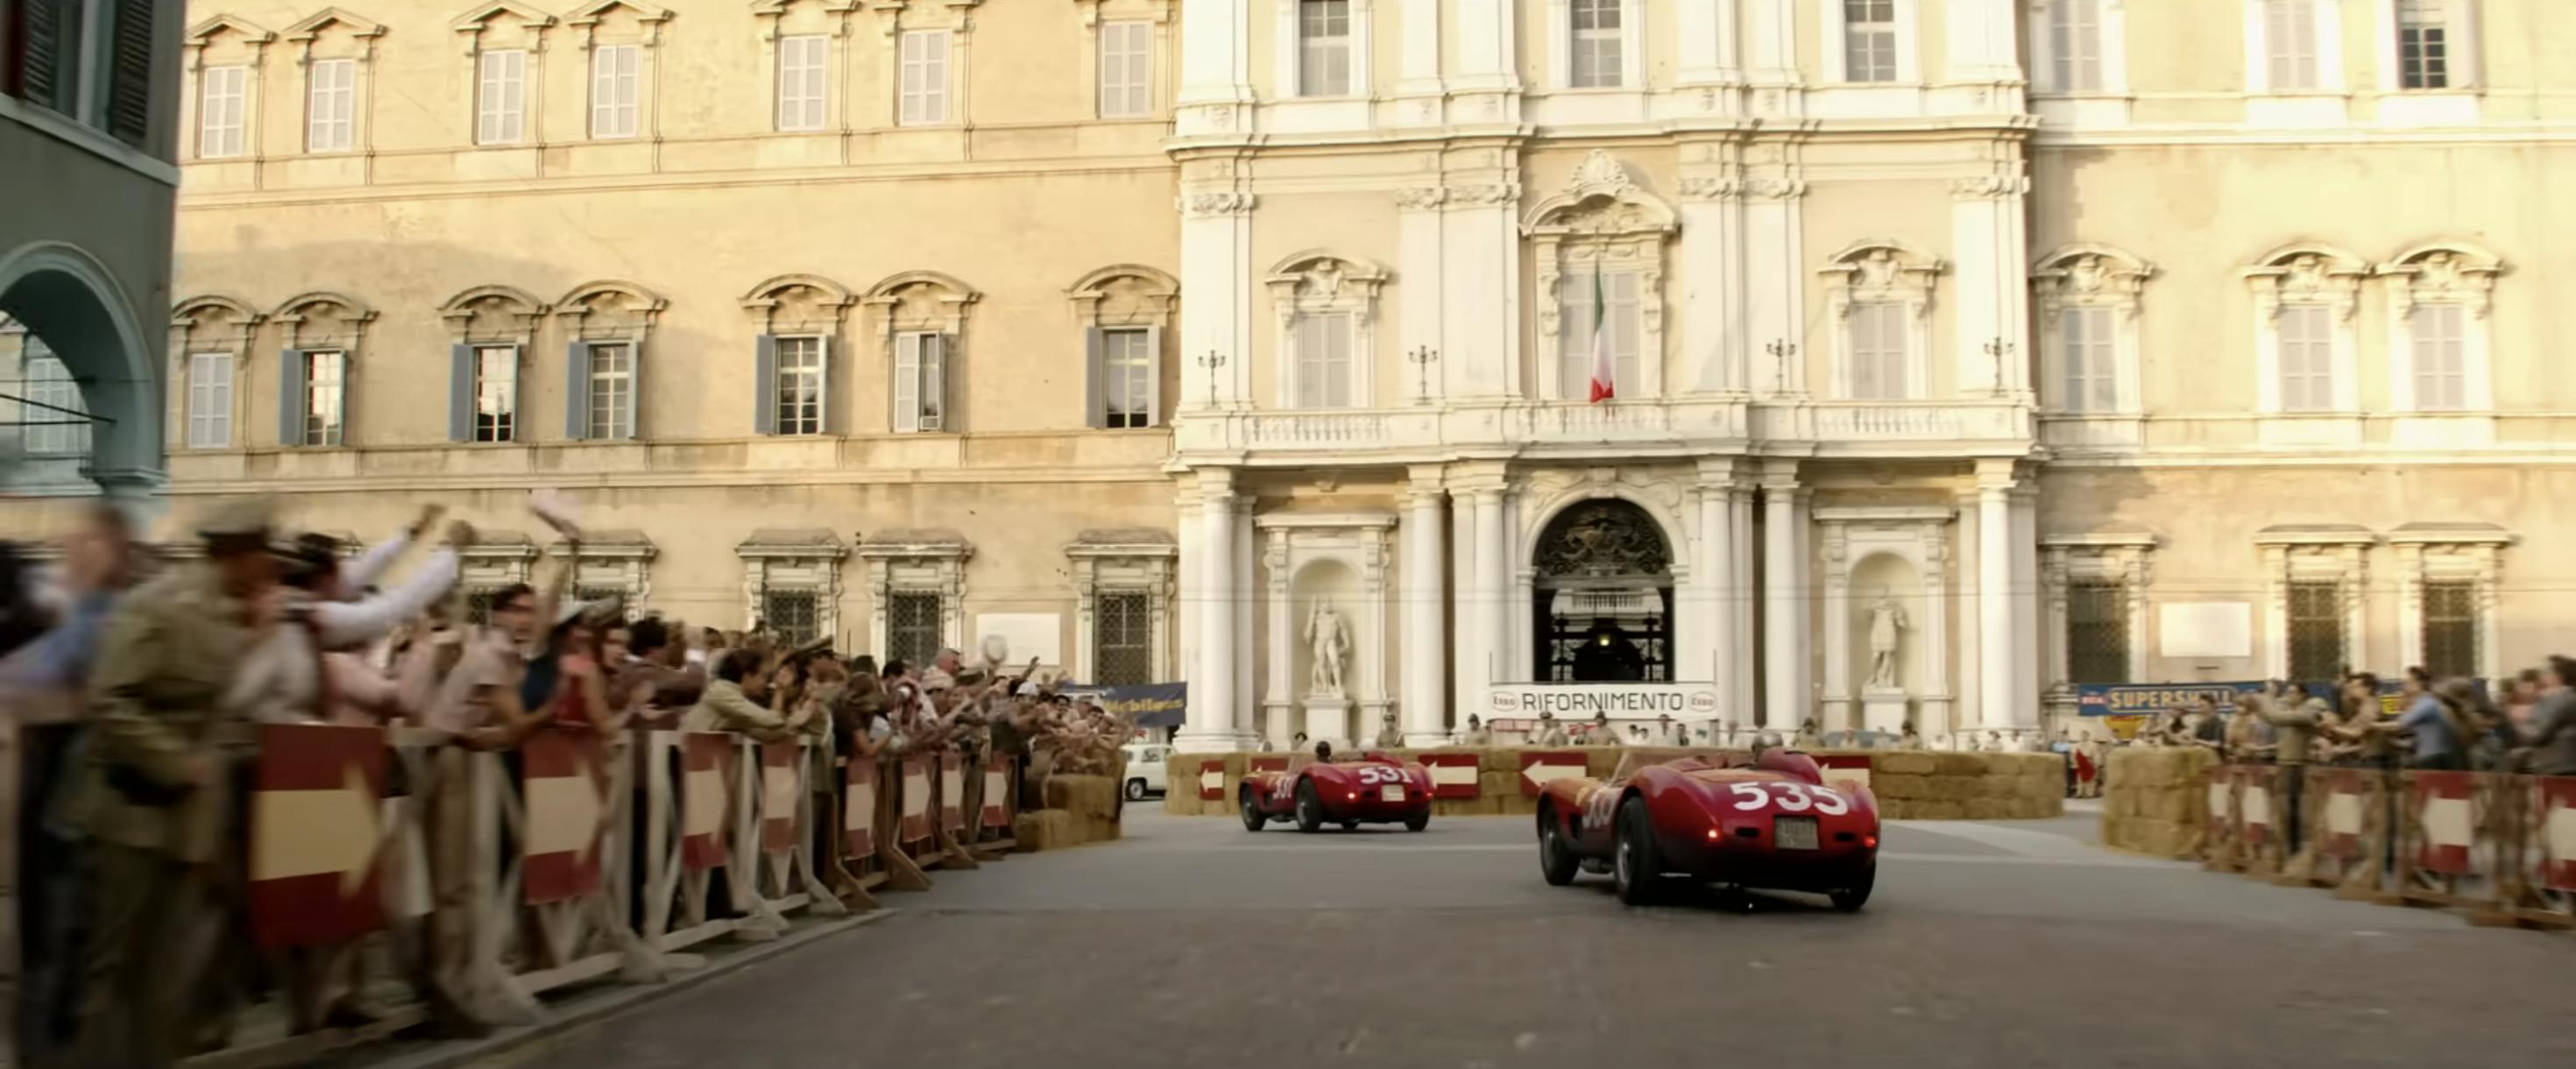 Ferrari film racing action still